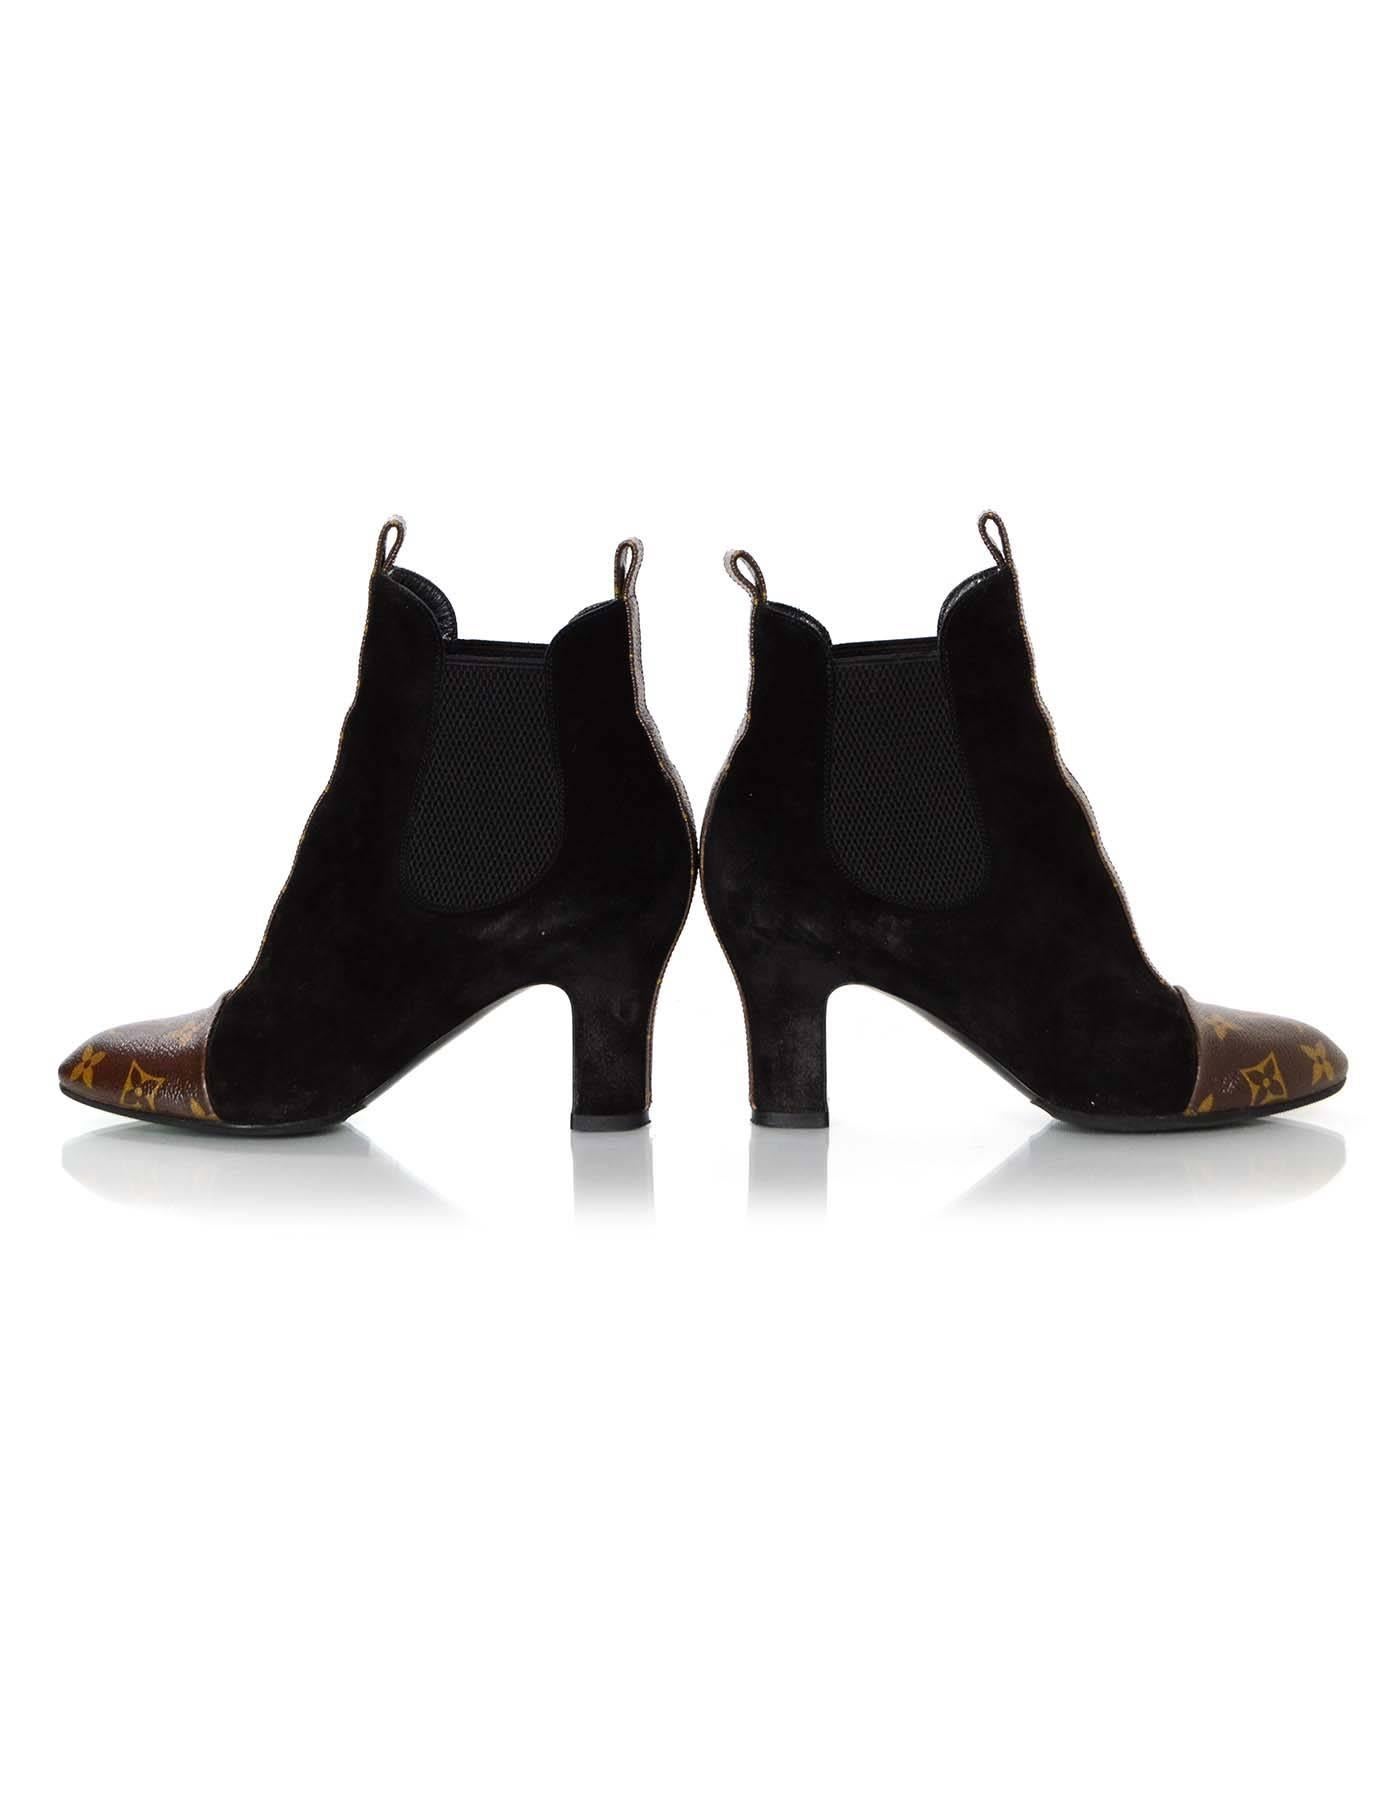 Black Louis Vuitton Monogram/Suede Revival Ankle Booties sz 36.5